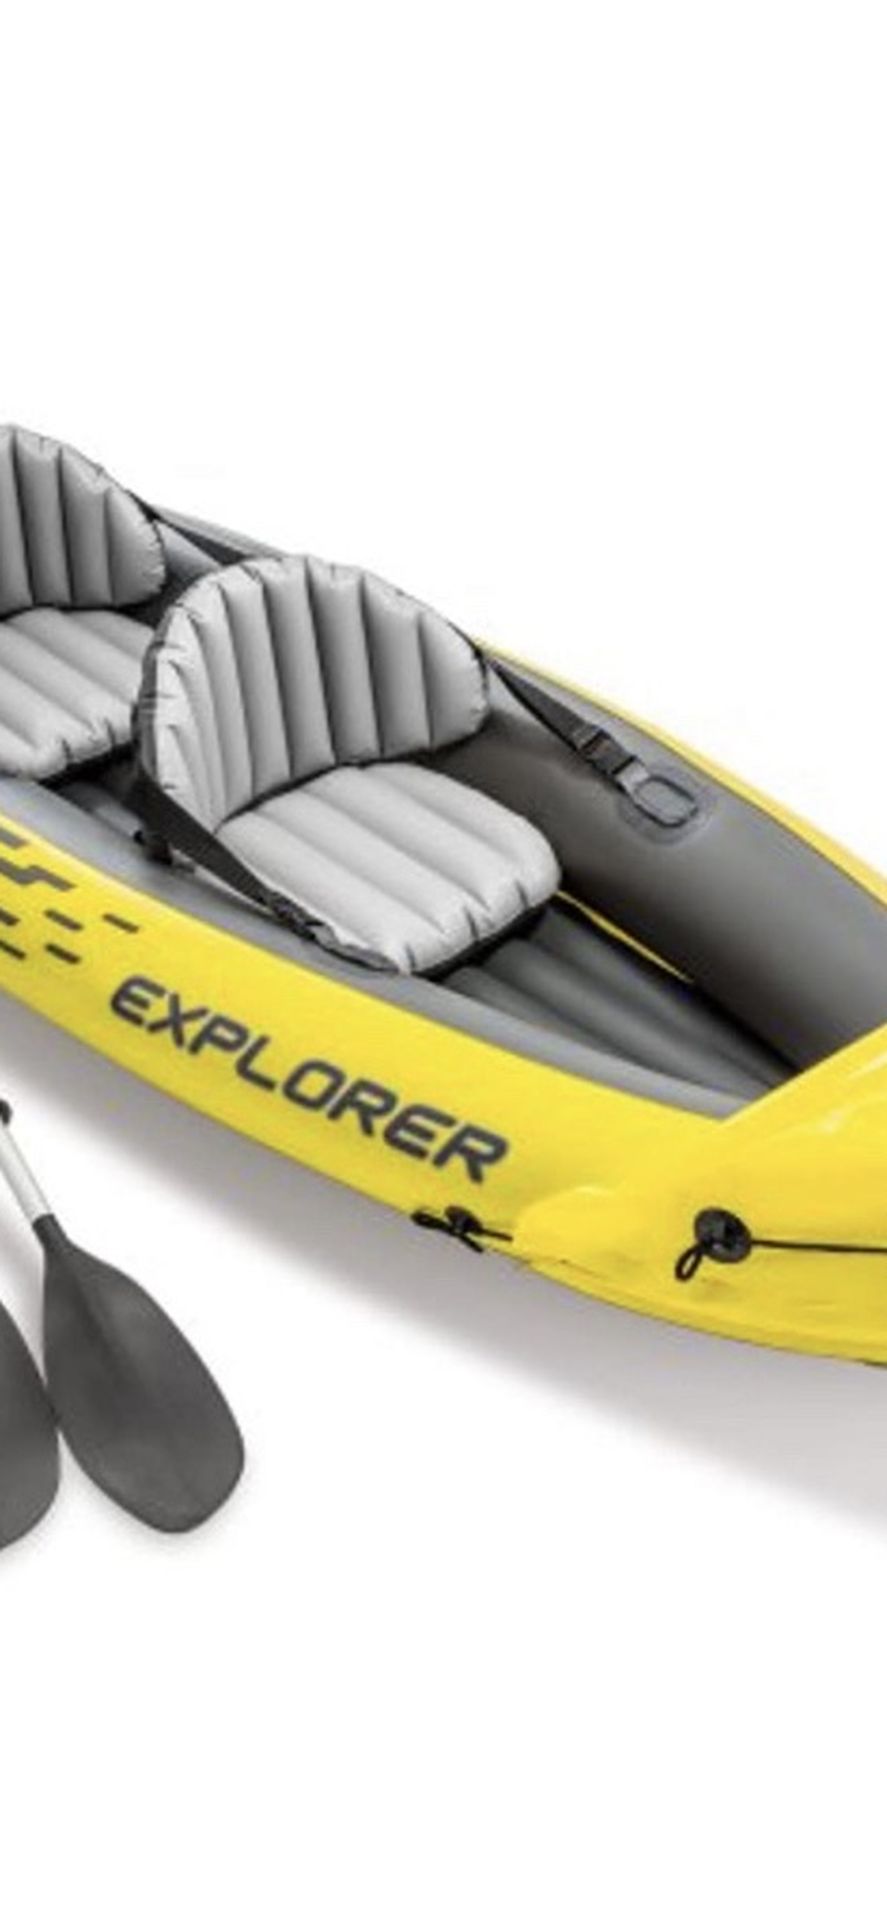 Intex Inflatable Kayak [Pending Pickup]